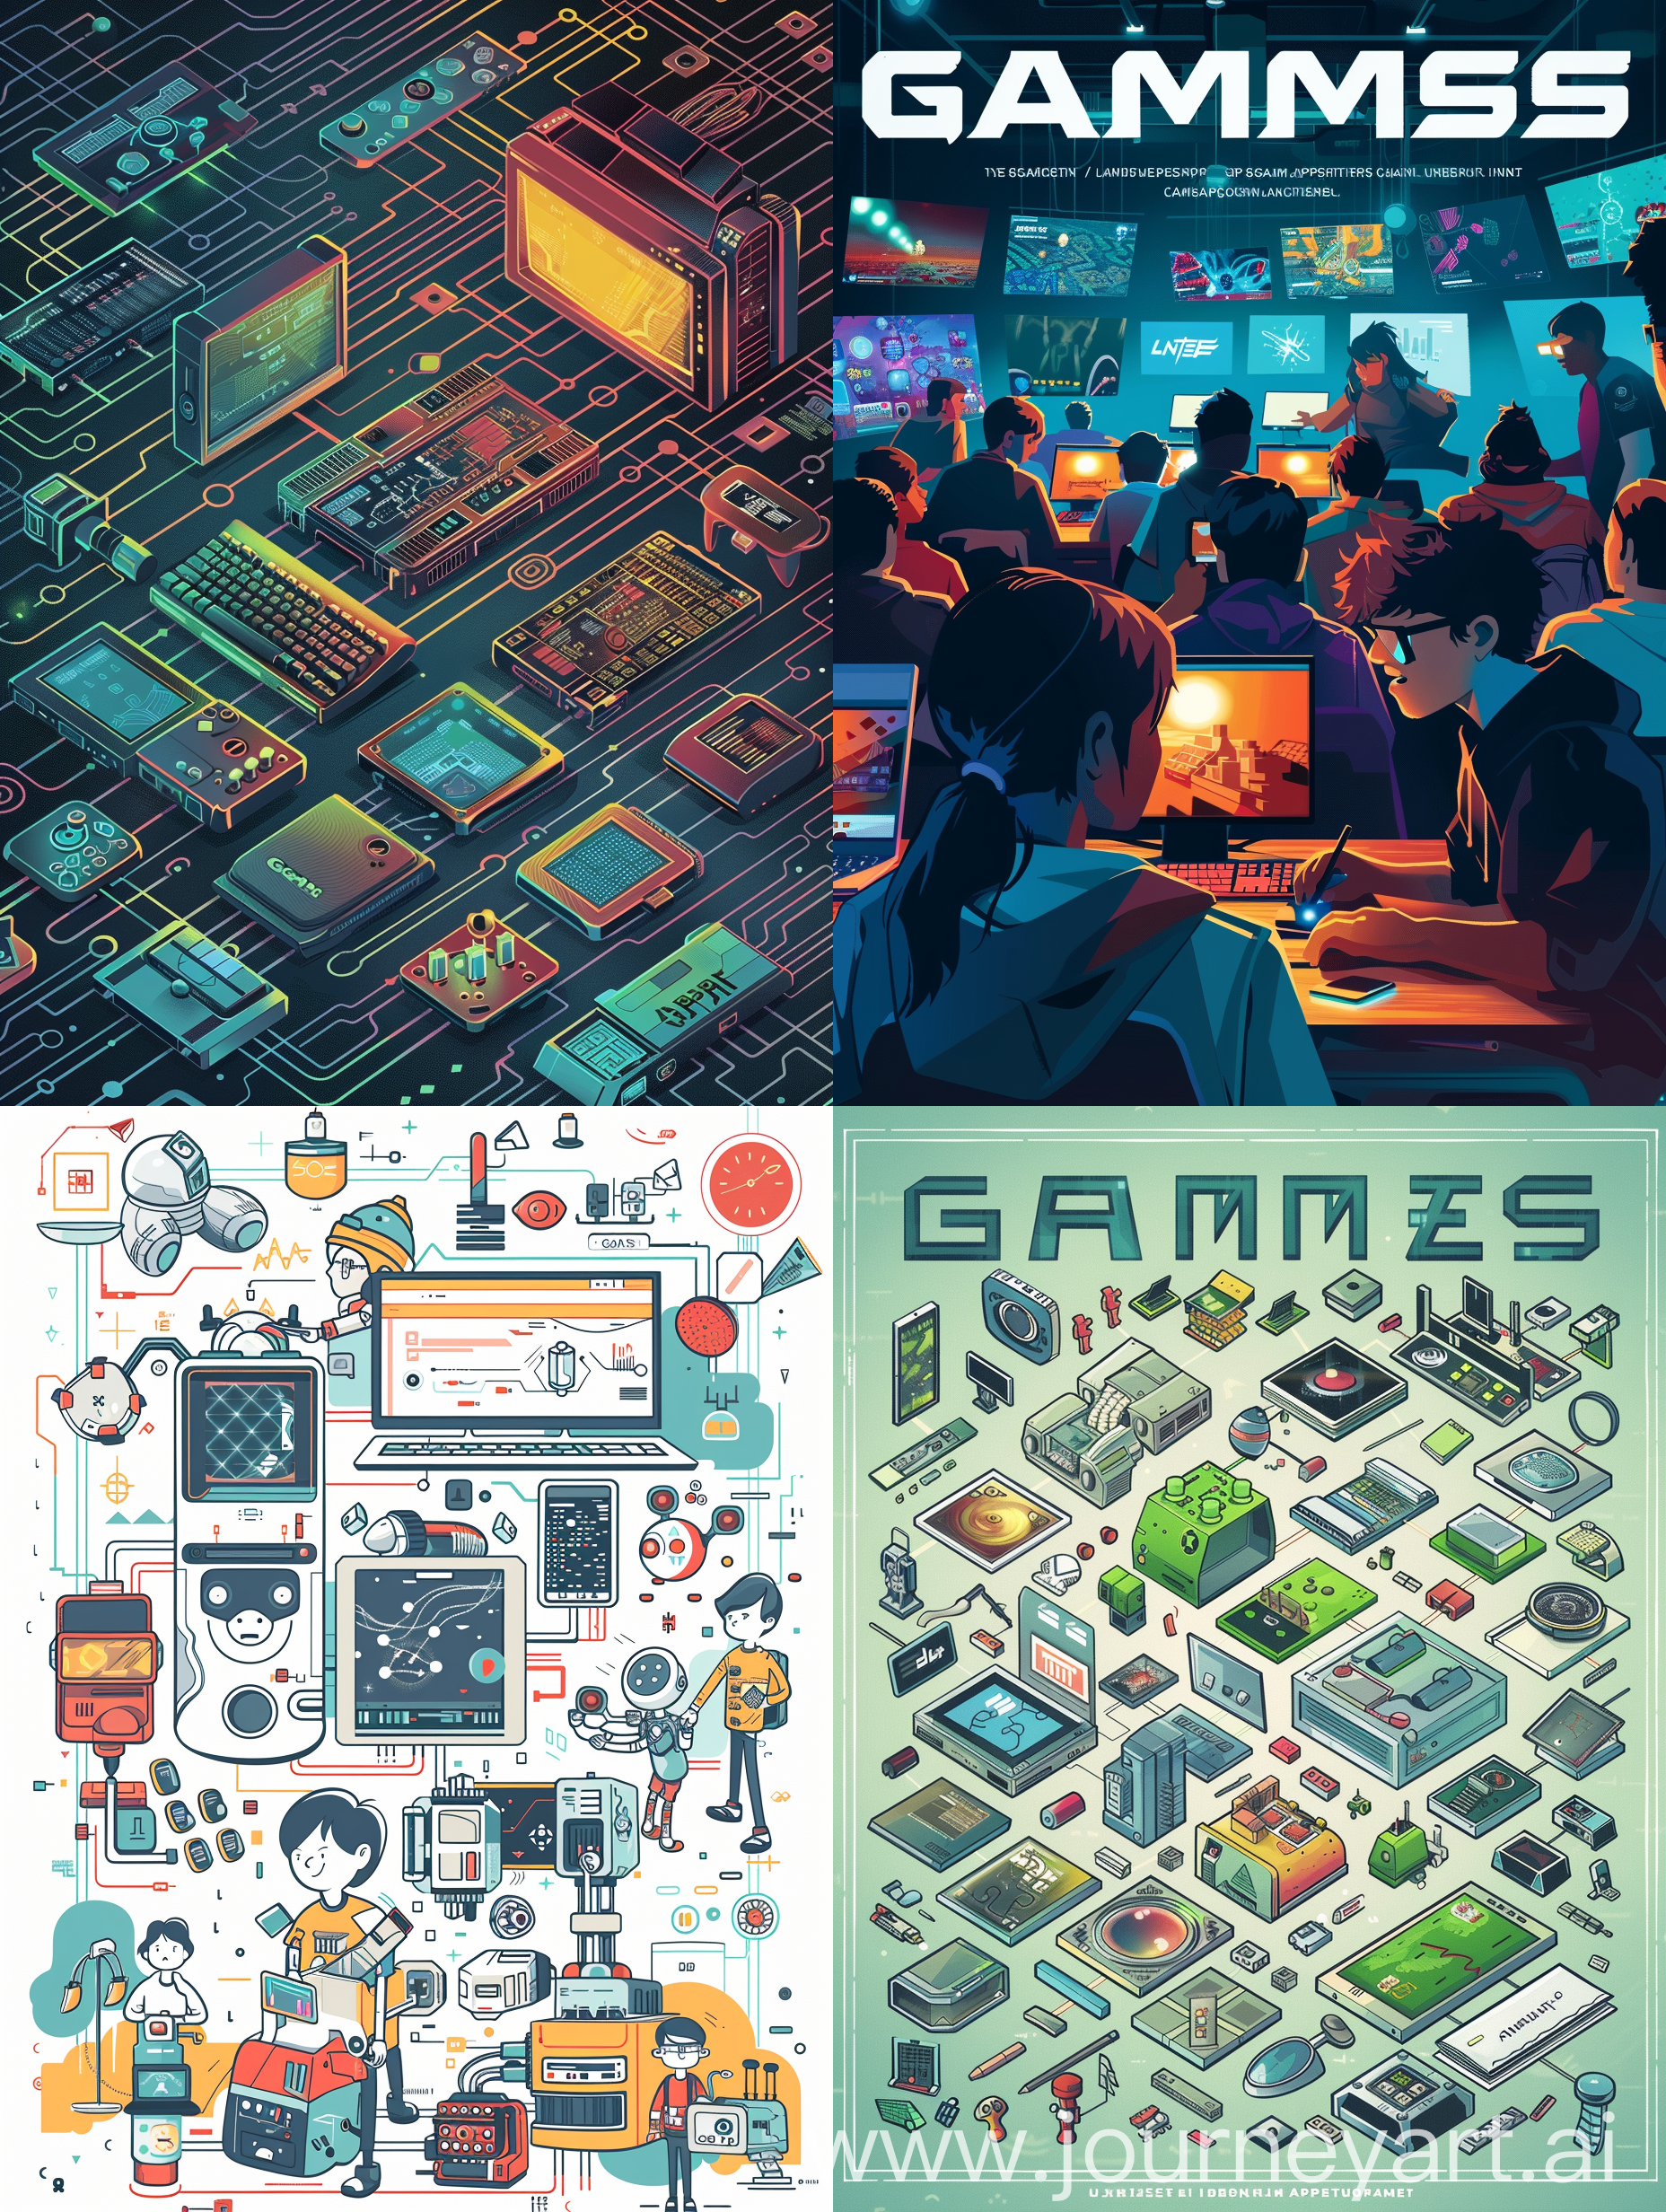 帮助我为一次mini-seminar画一张A4海报，我的主题是“游戏”，讲解了以下内容： 游戏引擎和图形技术的演进：介绍一些主流游戏引擎的发展历程，以及它们如何推动了计算机图形学的发展，例如Unity引擎、虚幻引擎等。 游戏对硬件发展的影响：游戏对显卡、处理器等硬件的要求，以及这些硬件如何不断升级以适应游戏的需求。 游戏中的人工智能应用：介绍游戏中常见的人工智能技术，如NPC的行为设计、智能对手的算法等，以及它们对计算机科学的贡献。 游戏对社交和协作的影响：讨论多人在线游戏和团队合作游戏如何促进玩家之间的社交互动和协作能力的发展。 游戏中的教育应用：探讨其他类型的教育游戏，如数学、语言学习、科学等领域的游戏应用。 游戏文化和社区：介绍游戏文化的发展，玩家社区的形成以及游戏对文化传承和社会影响的作用。